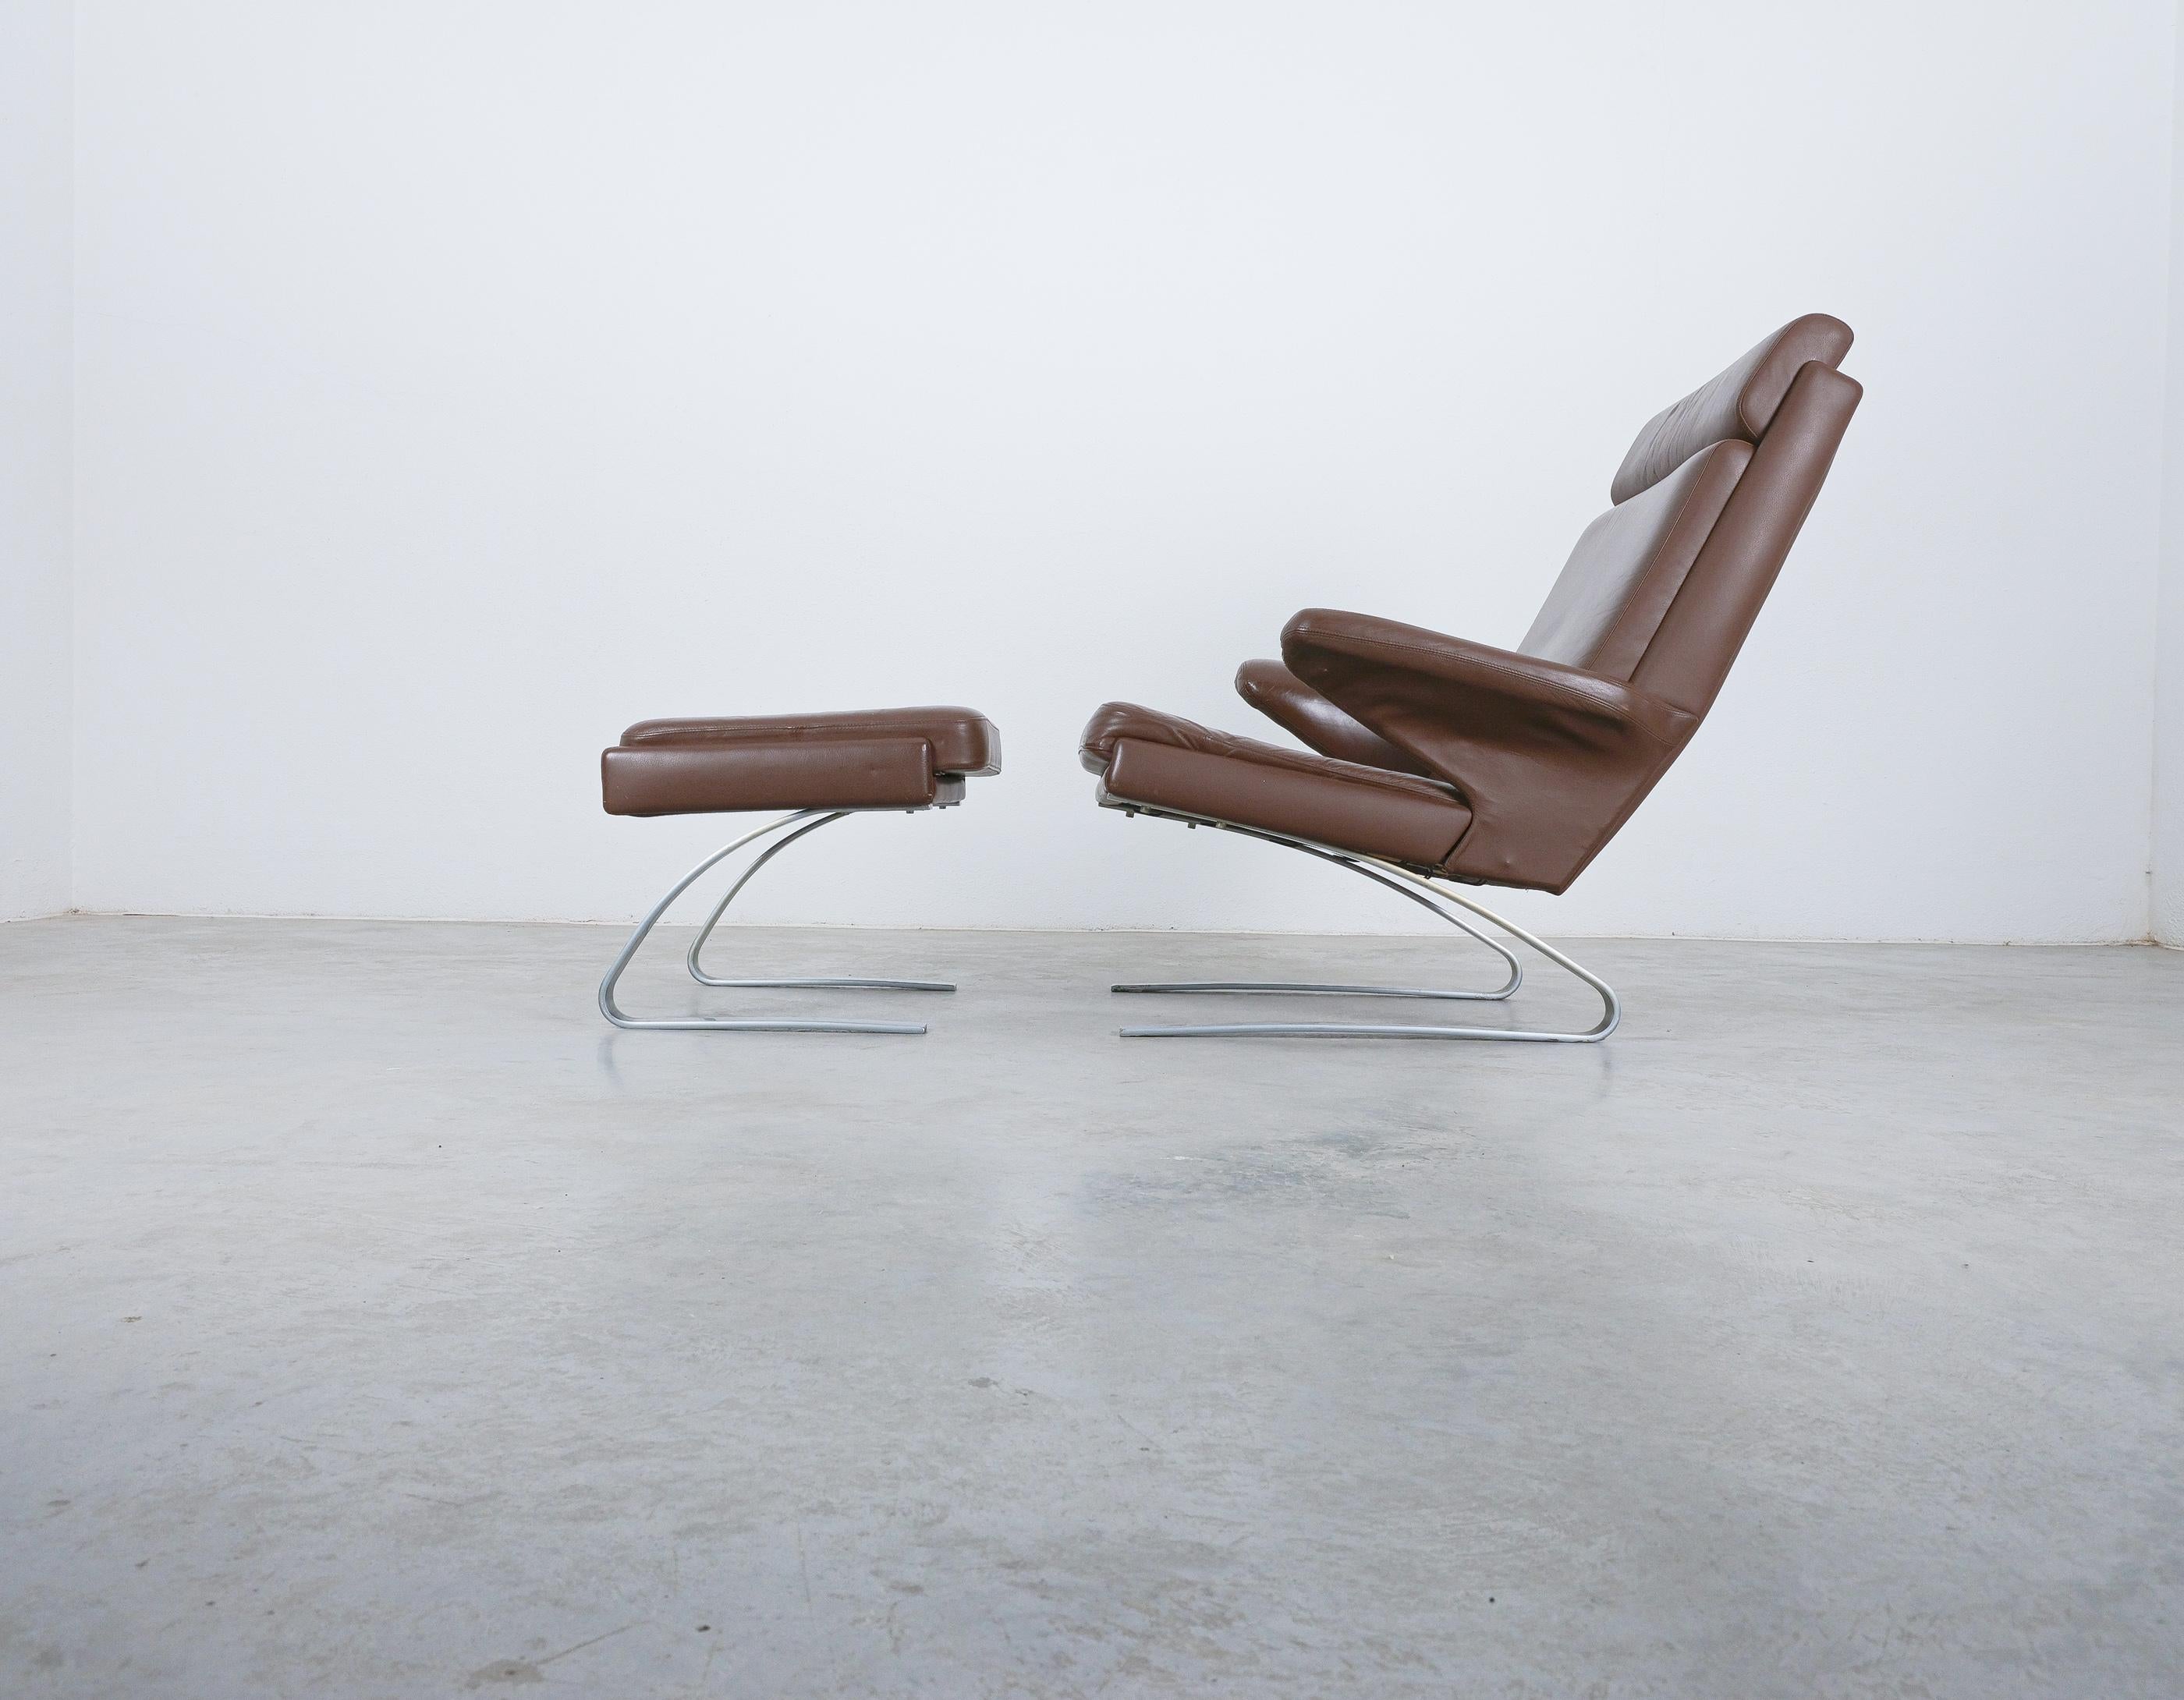 COR Swing Leather Lounge Chair by Reinhold Adolf & Hans-Jürgen Schröpfer, 1976

Original Swing chair + ottoman avec son cuir aniline d'origine, lisse et indemne. Le cuir d'origine de cette chaise est encore en très bon état et a été exécuté dans un